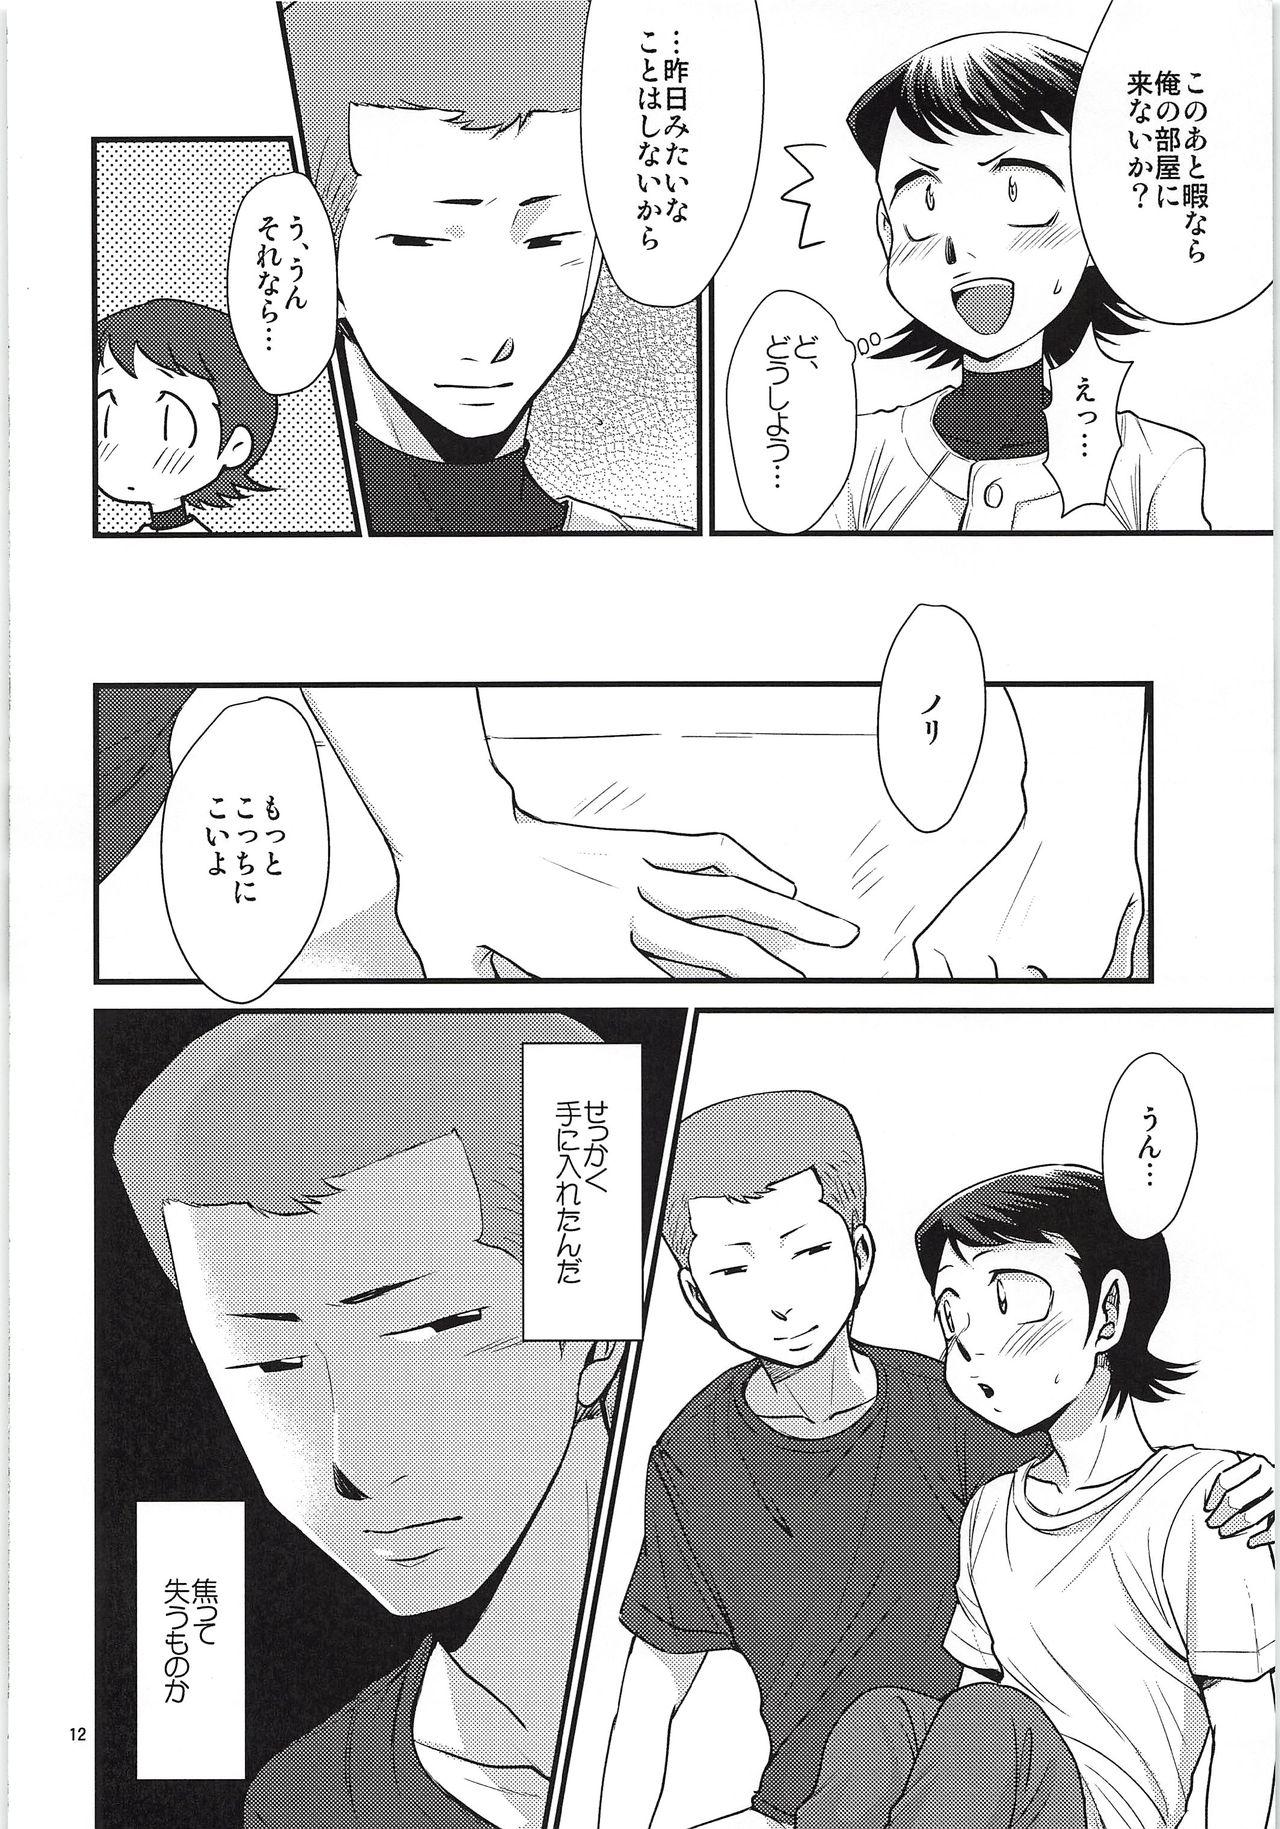 Culo Tsukiatte 3 Nichimenanoni Kareshi ga Guigui Semetekuru Ken - Daiya no ace Classroom - Page 11